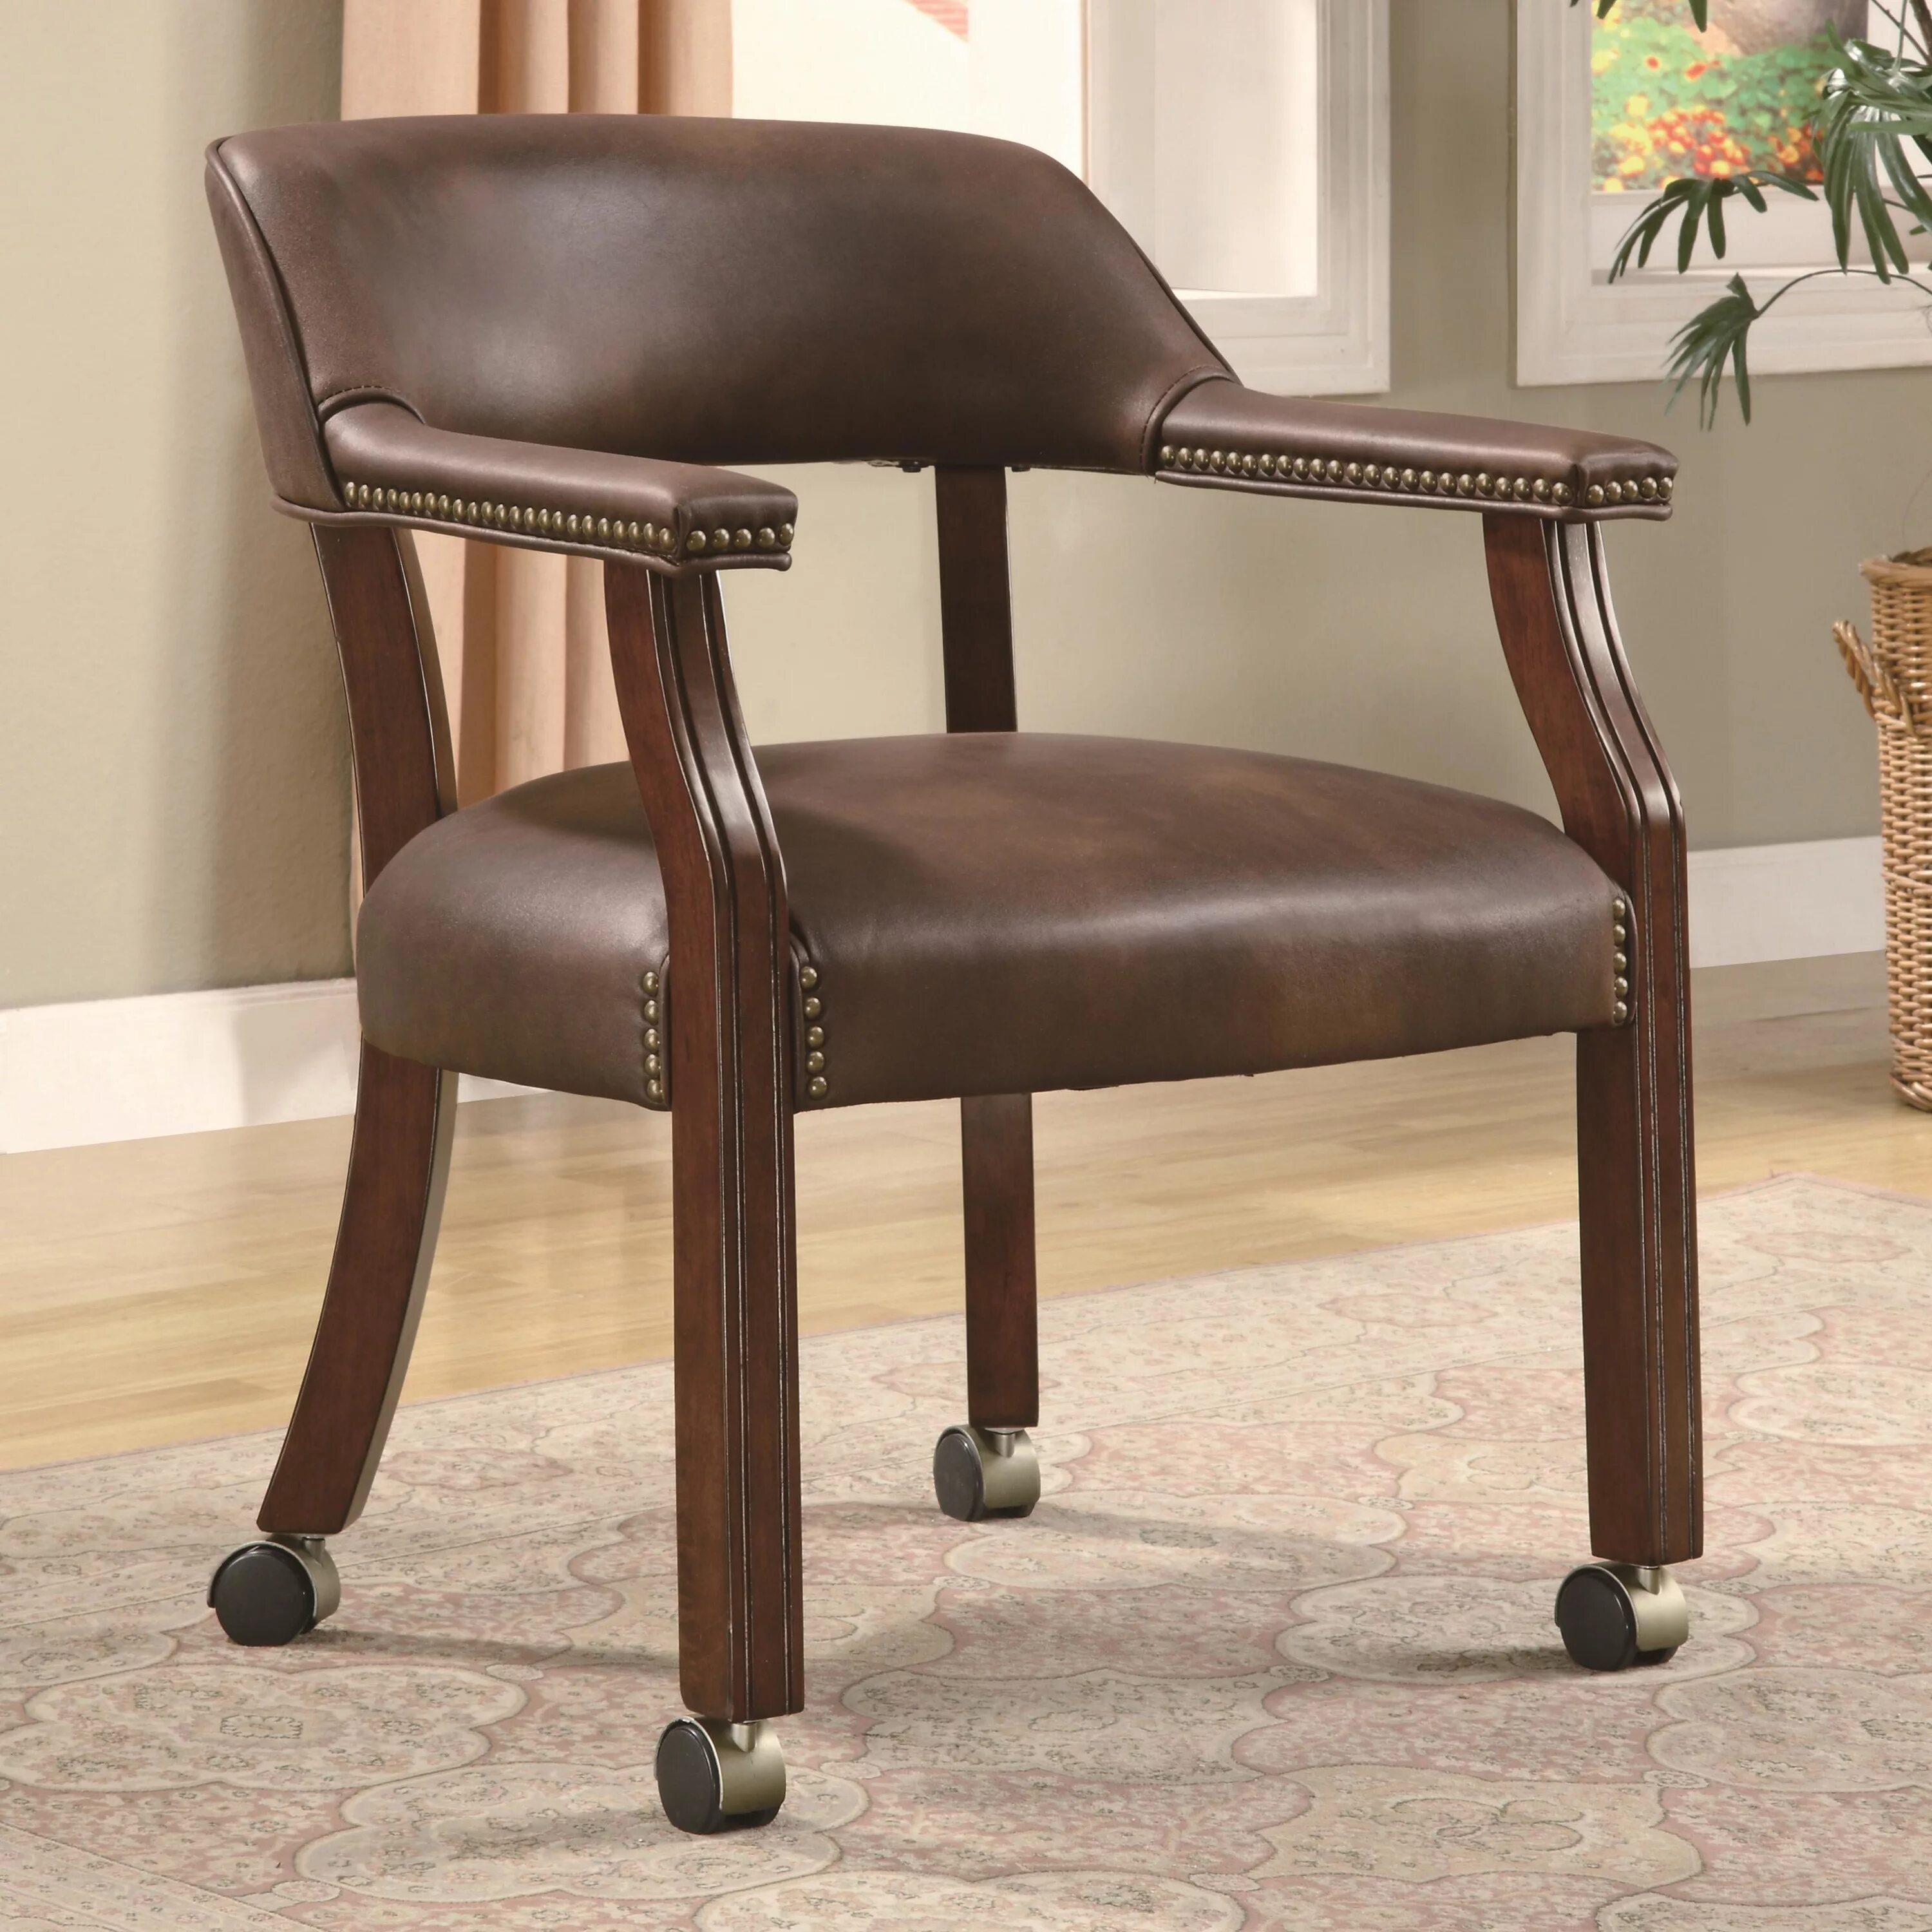 Chairs brown. Кресло для домашнего кабинета. Стул для домашнего кабинета. Стул для кабинета в классическом стиле. Деревянное рабочее кресло для домашнего кабинета.